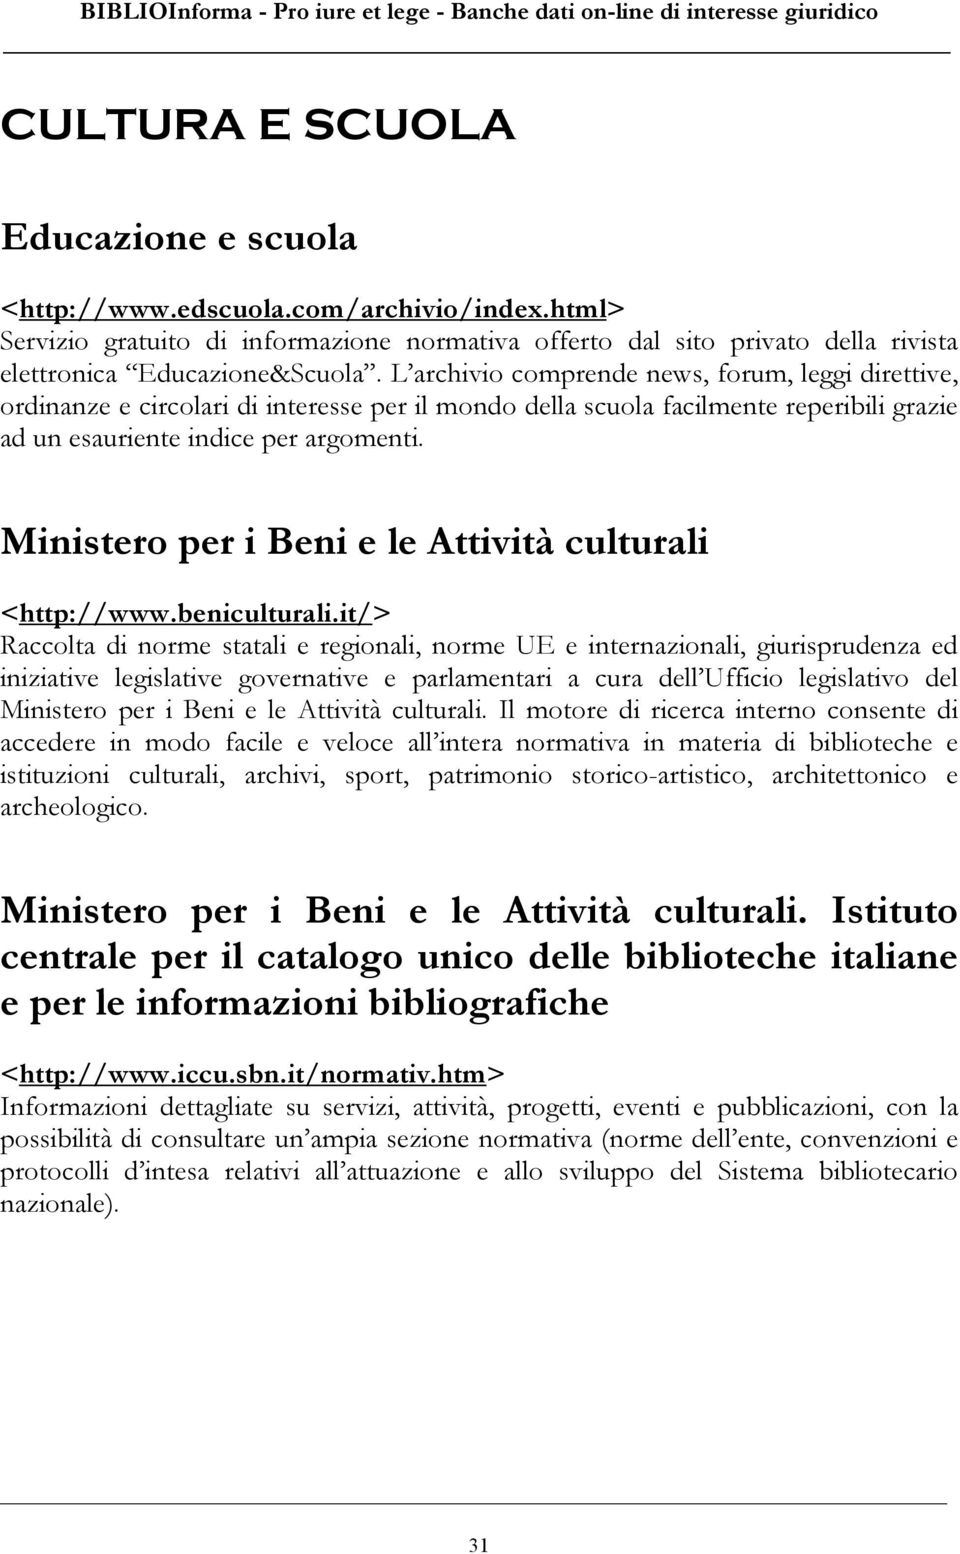 Ministero per i Beni e le Attività culturali <http://www.beniculturali.